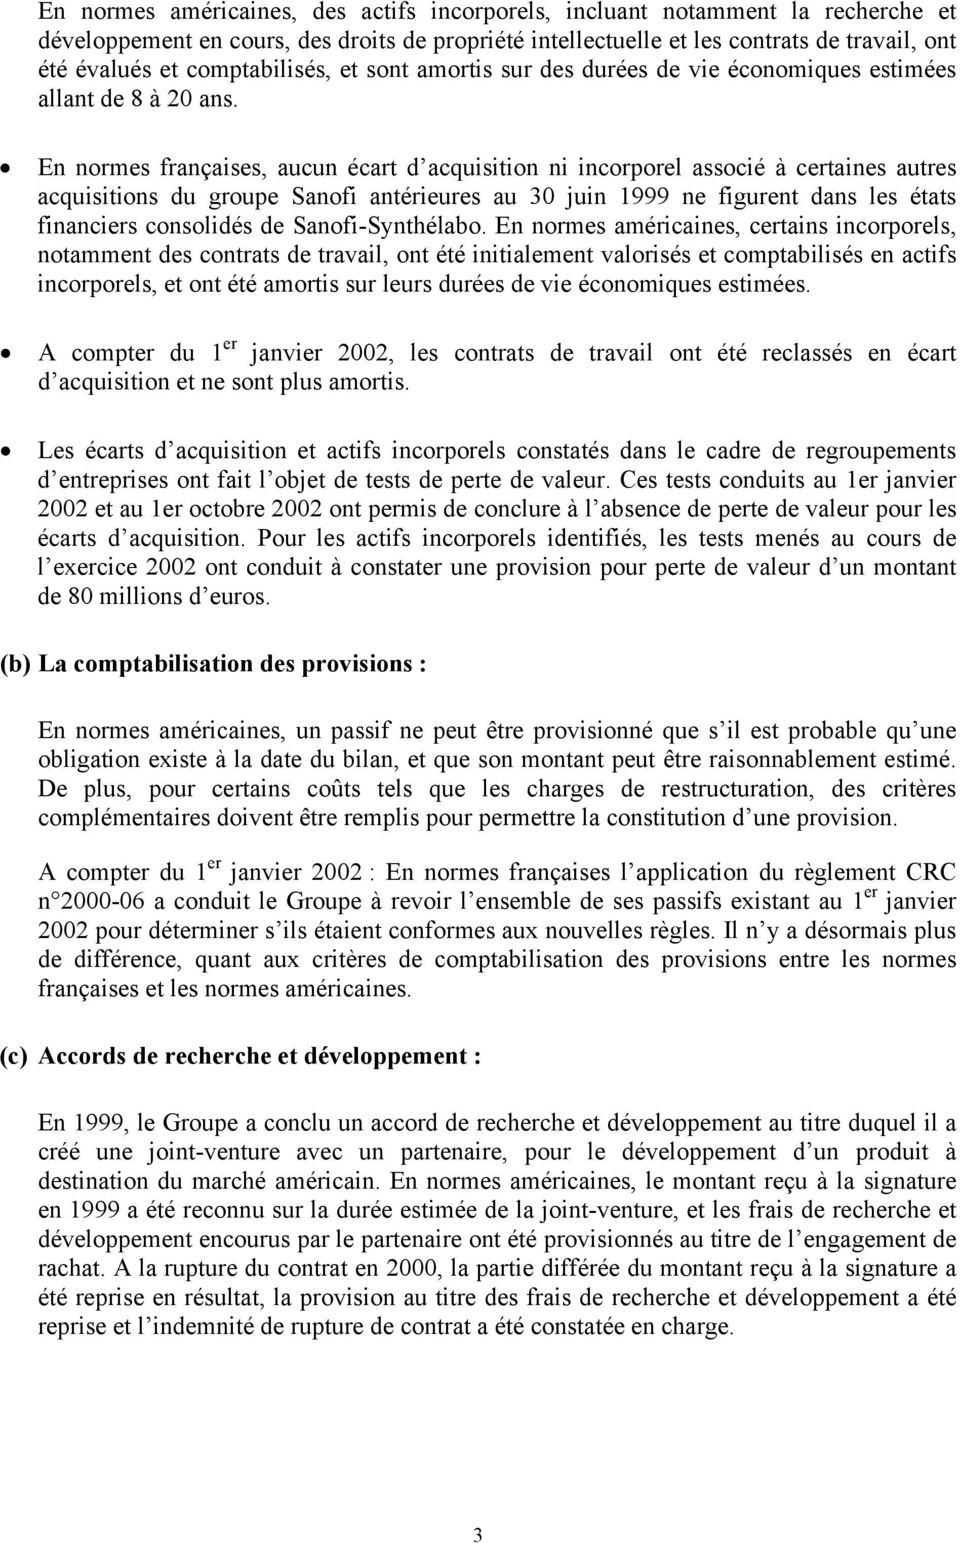 En normes françaises, aucun écart d acquisition ni incorporel associé à certaines autres acquisitions du groupe Sanofi antérieures au 30 juin 1999 ne figurent dans les états financiers consolidés de